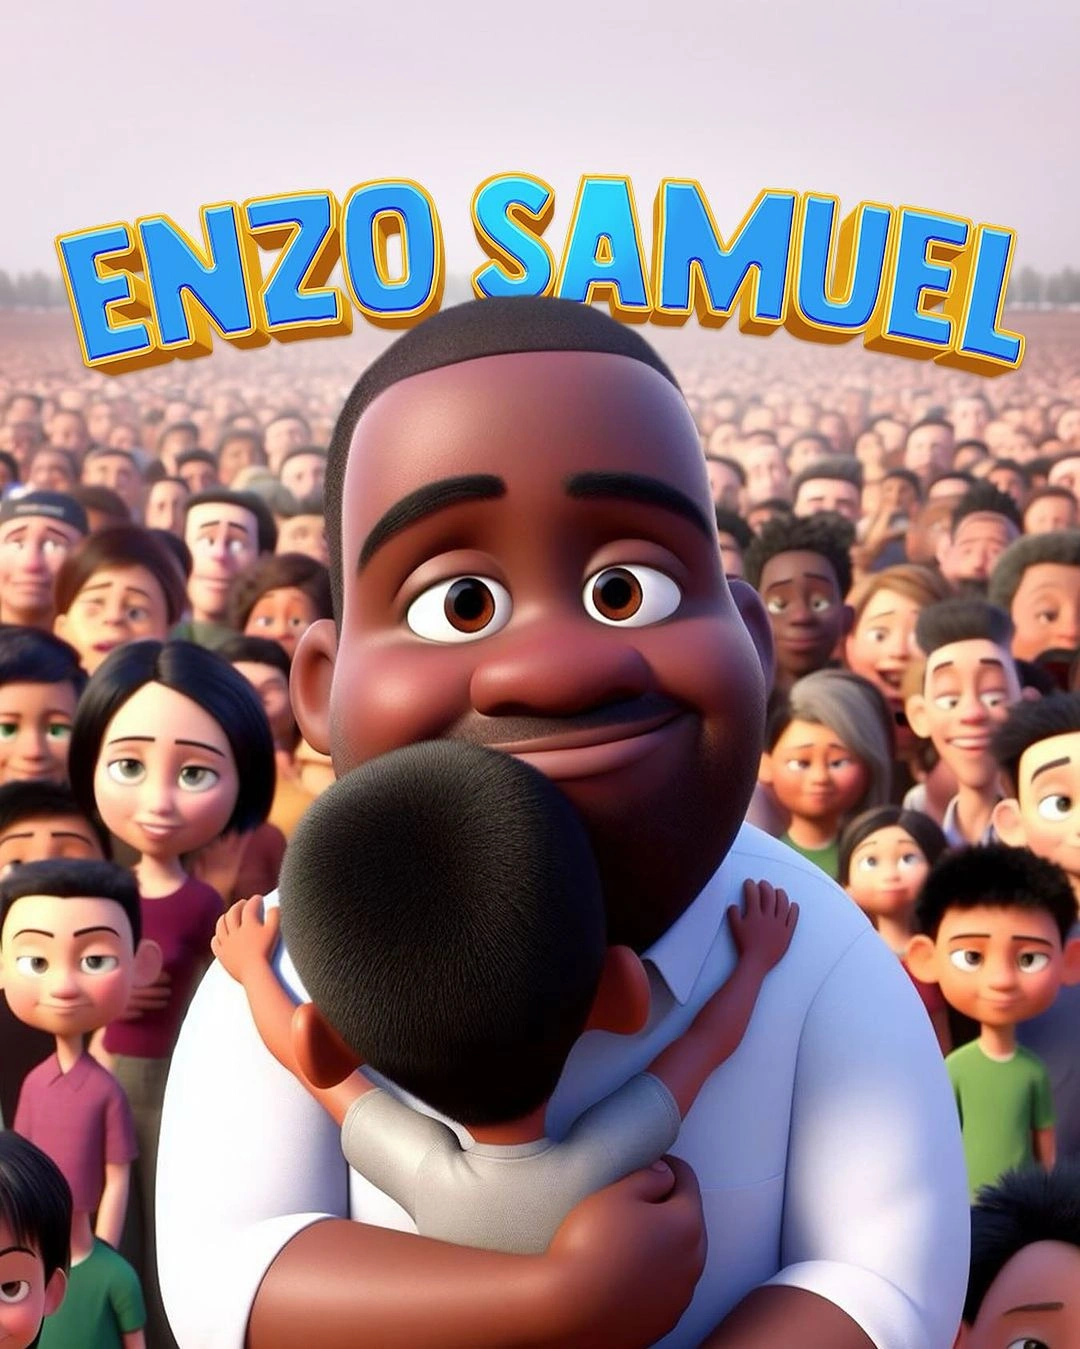 Enzo Samuel como personagem da Disney Pixar